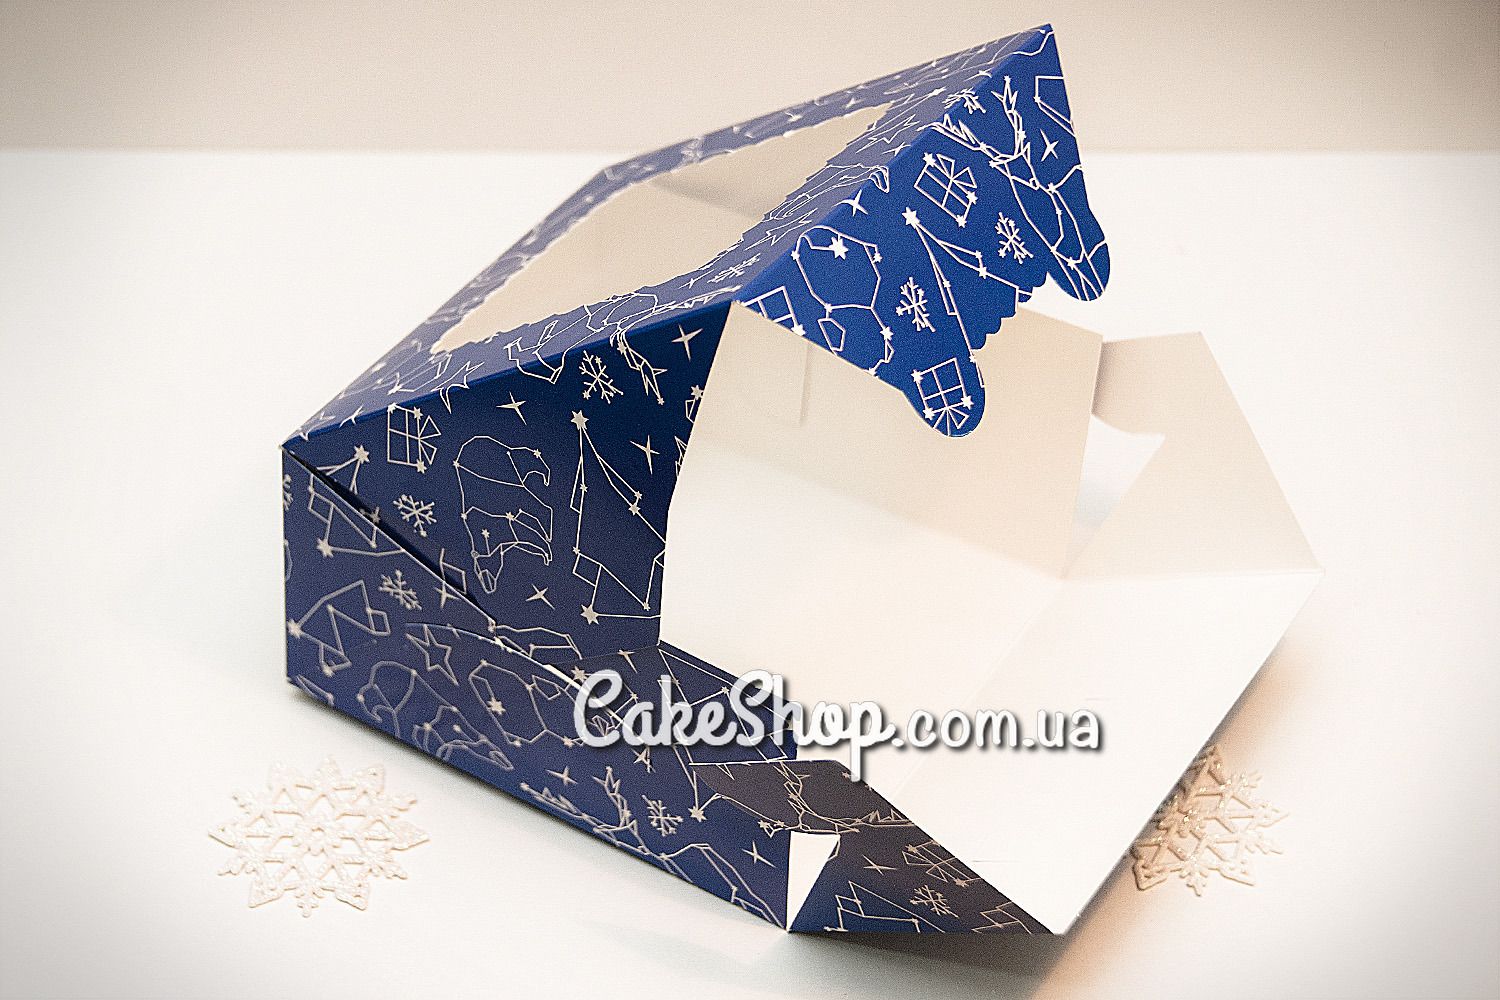 ⋗ Коробка на 4 кекса с окном Новогодняя Синяя купить в Украине ➛ CakeShop.com.ua, фото